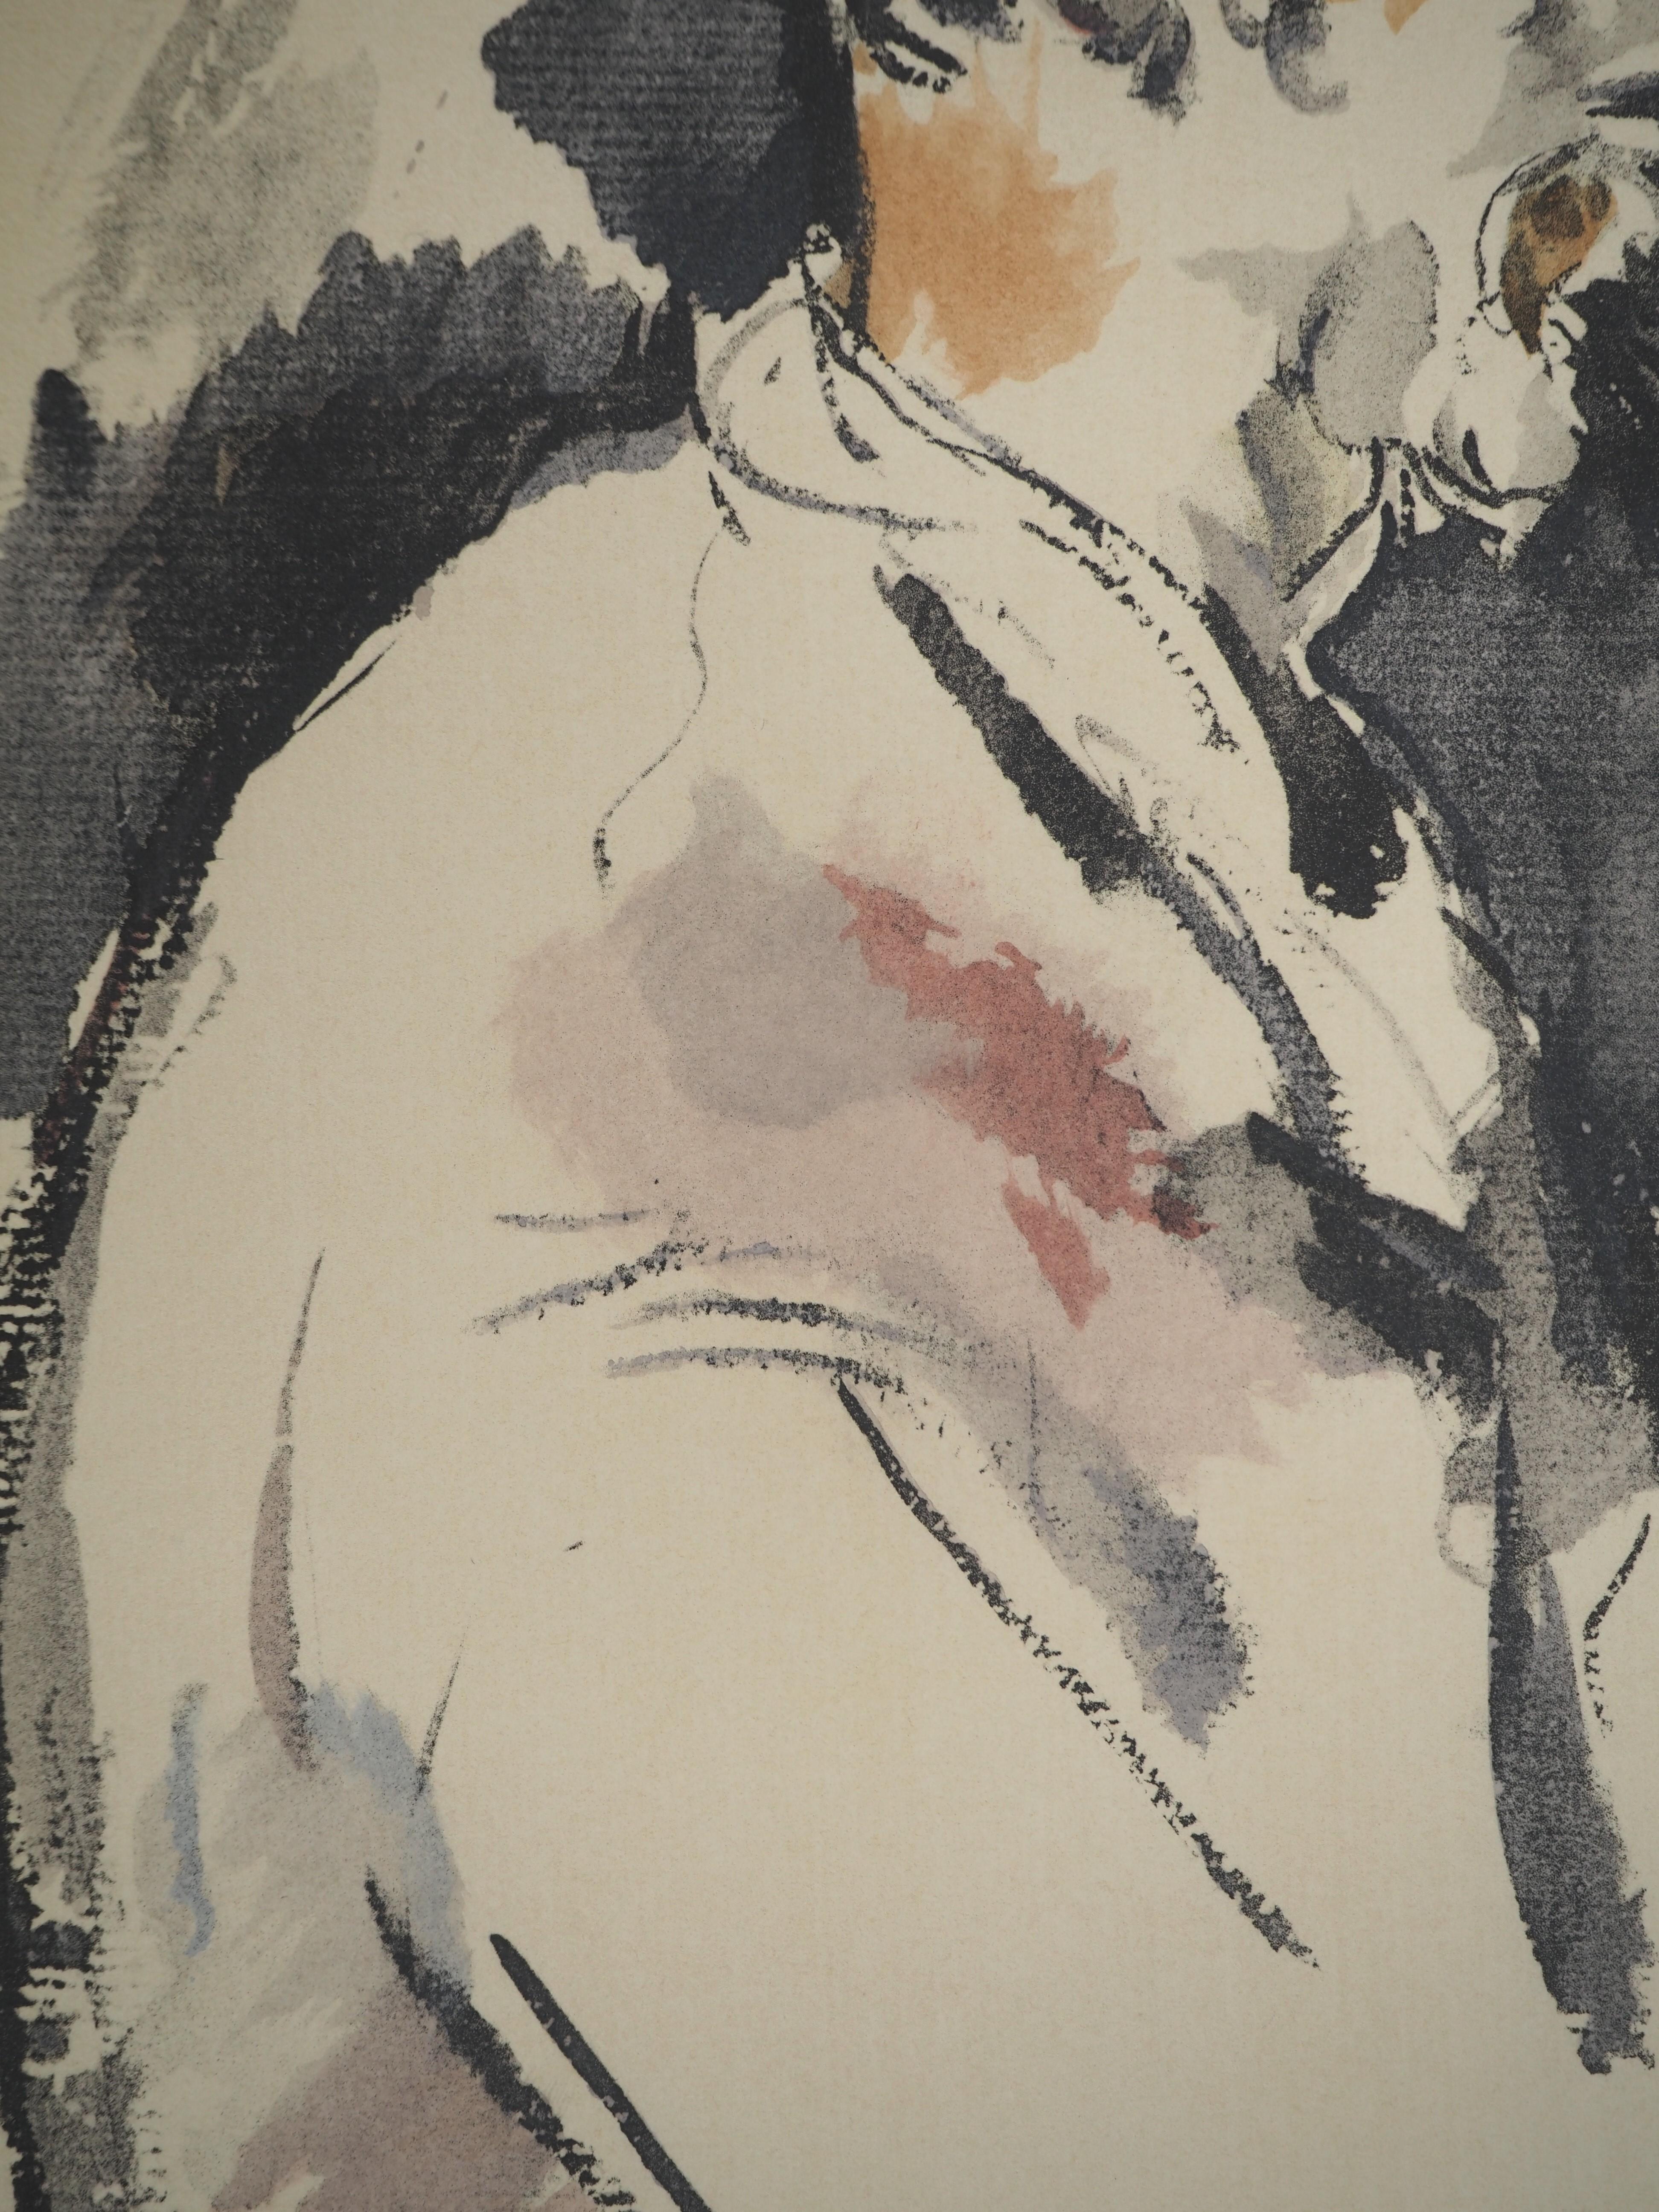 Paul Cezanne
Le joueur de cartes, 1971

Lithographie et pochoir (atelier Jacomet)
Non signé
Numéroté / 225
Sur papier appliqué sur vélin d'Arches 53.5 x 41.5 cm (c. 21 x 16.5 in)

INFORMATION : Cette lithographie fait partie du portfolio 